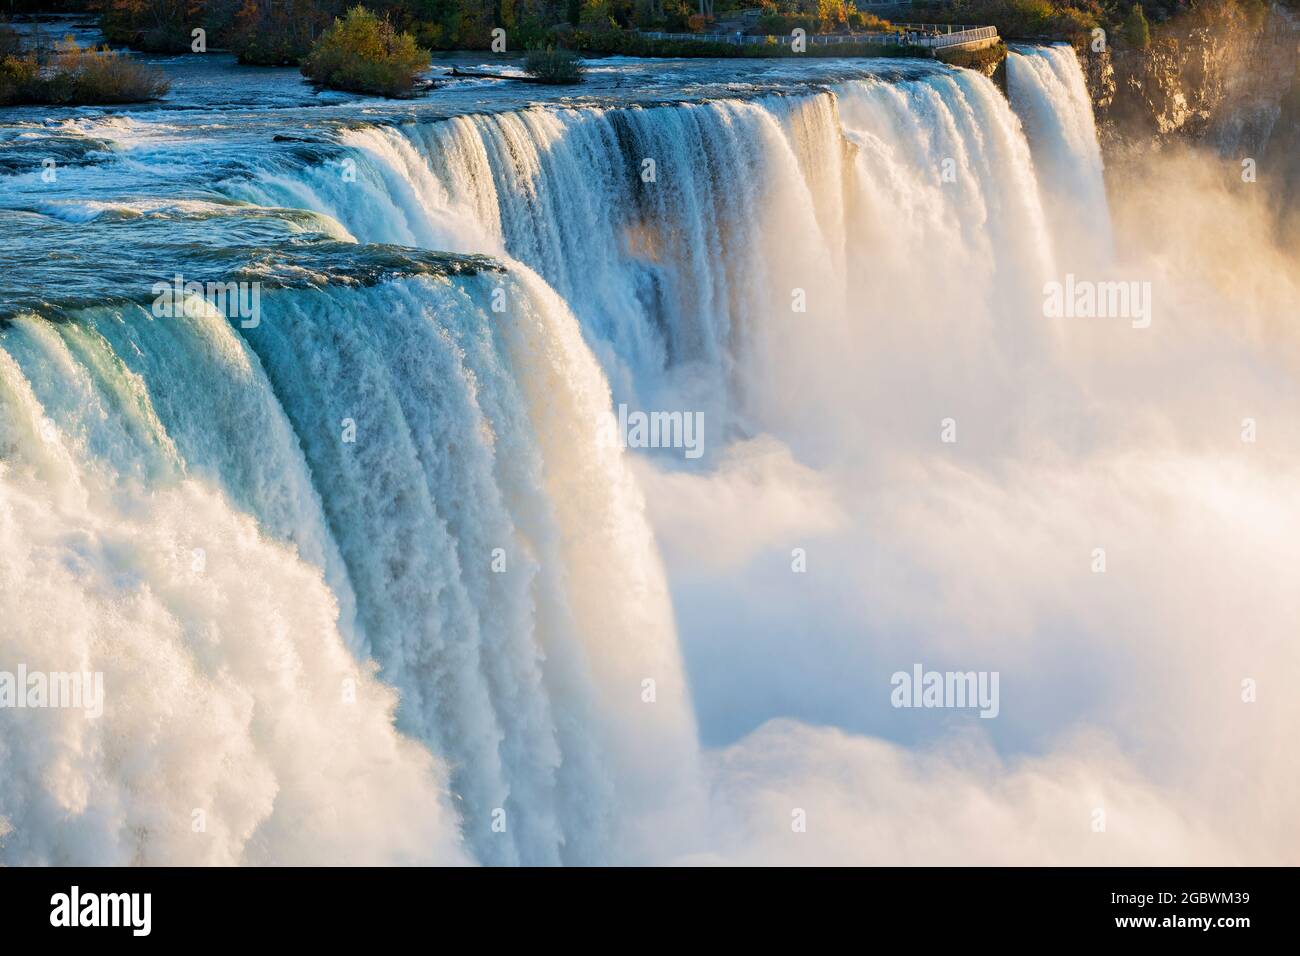 USA, New York, New York state Park, Niagara Falls, primo piano delle American Falls, che mostrano il grande volume di acqua che cade sull'orlo del baratro Foto Stock